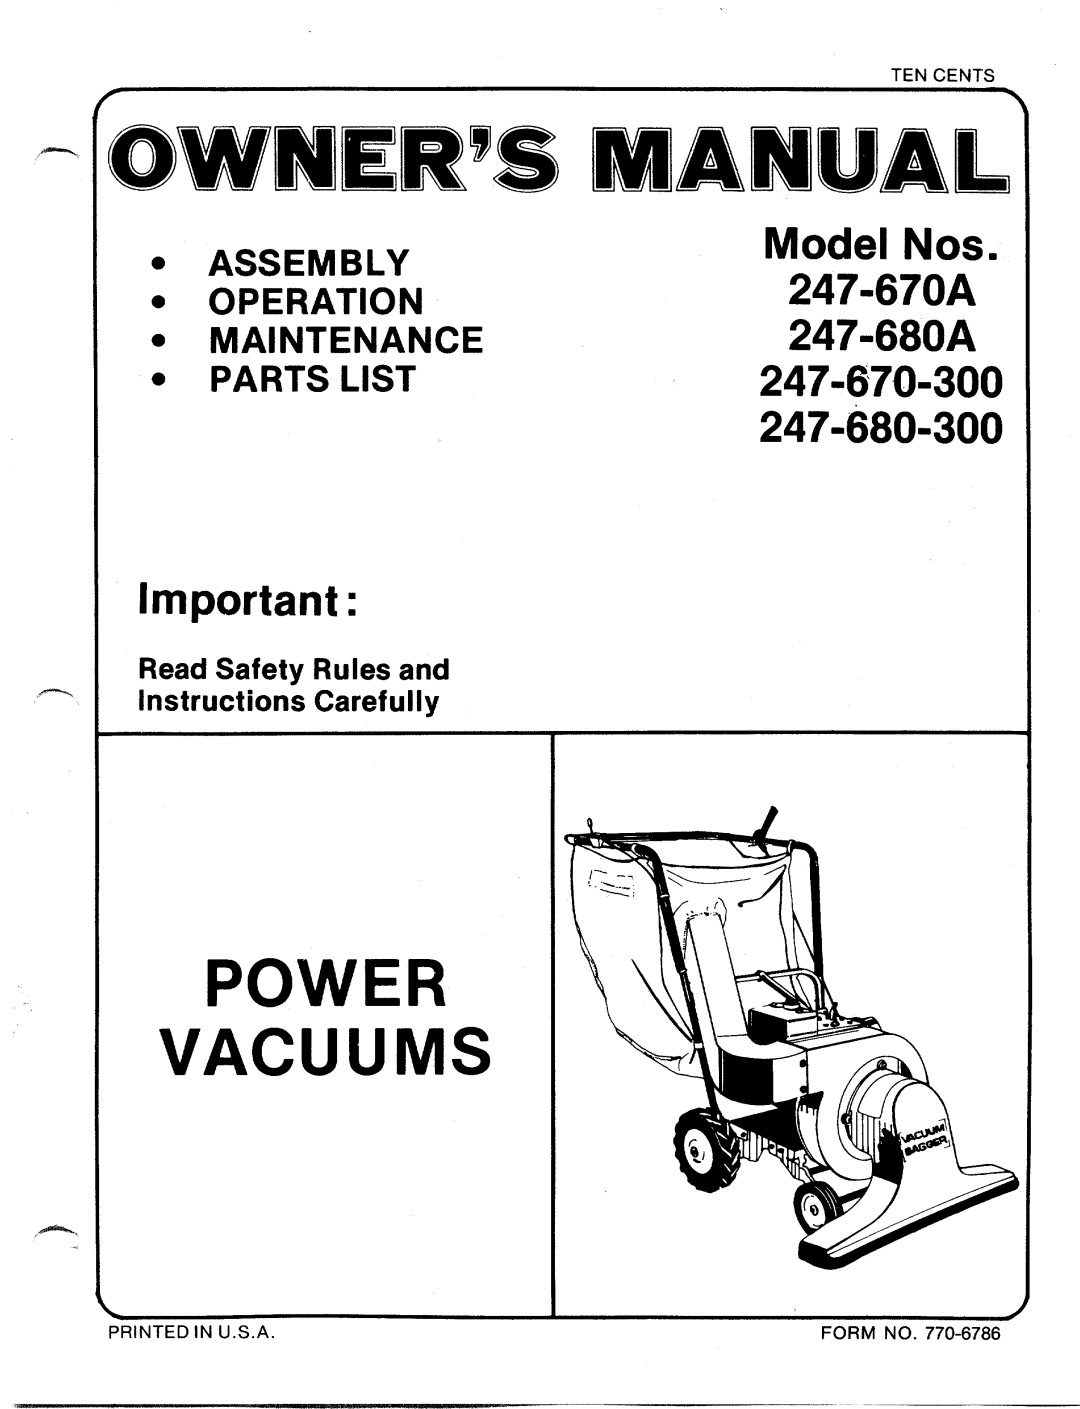 MTD 247-670A, 247-680A, 247-680-300, 247-670-300 manual 